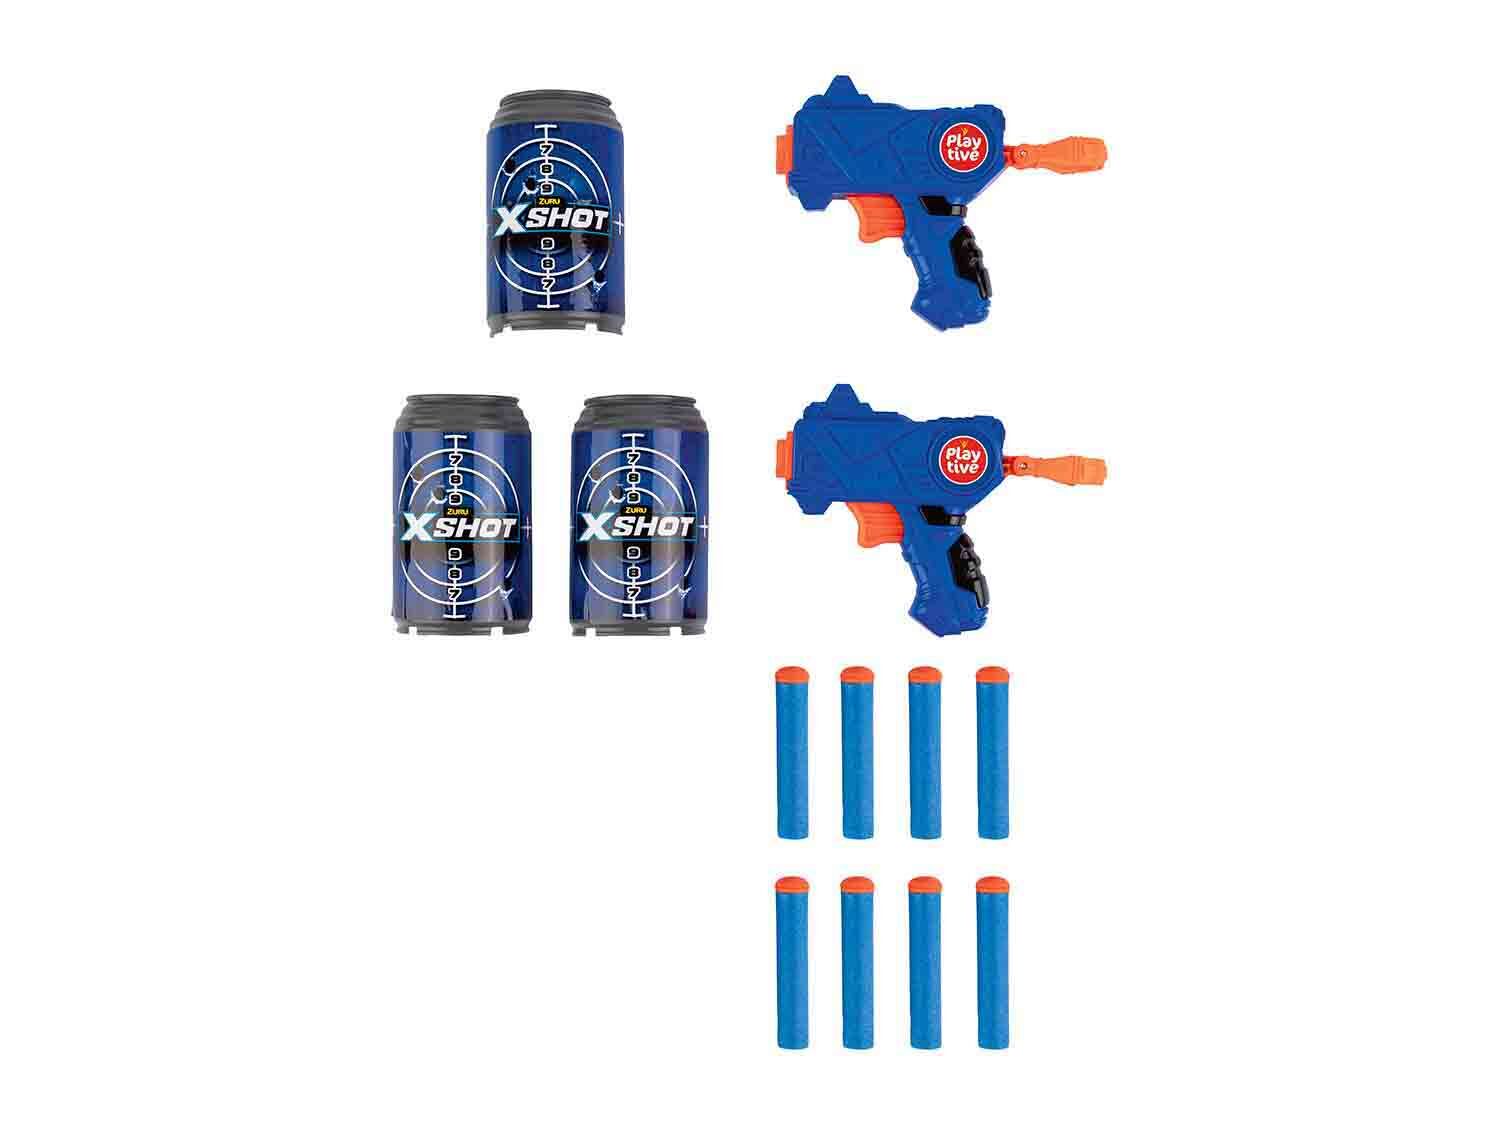 Pistolas de juguete X-Shot double